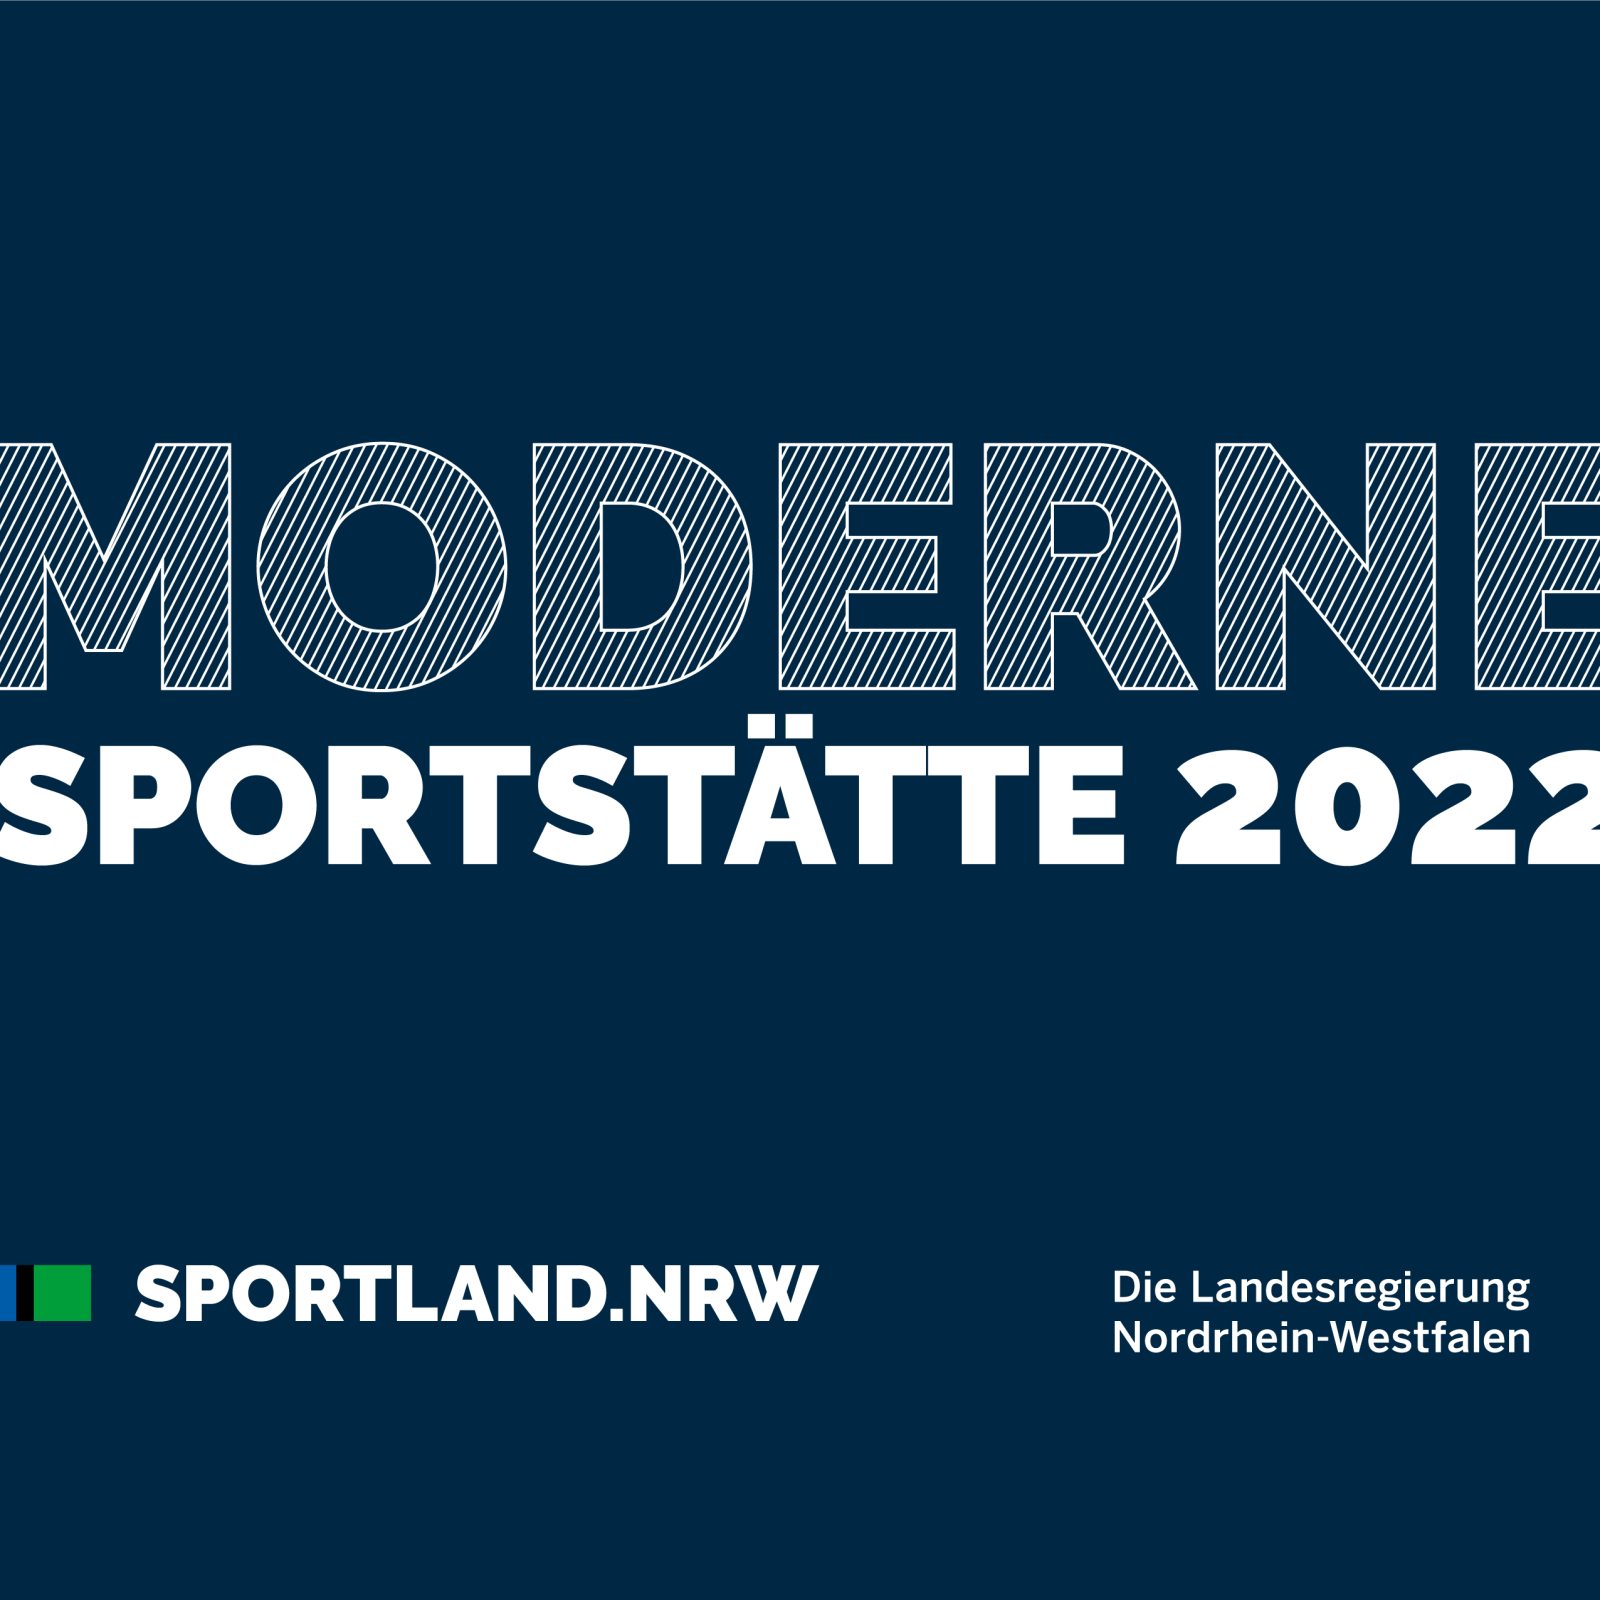 Schild Moderne Sportstätte 2022